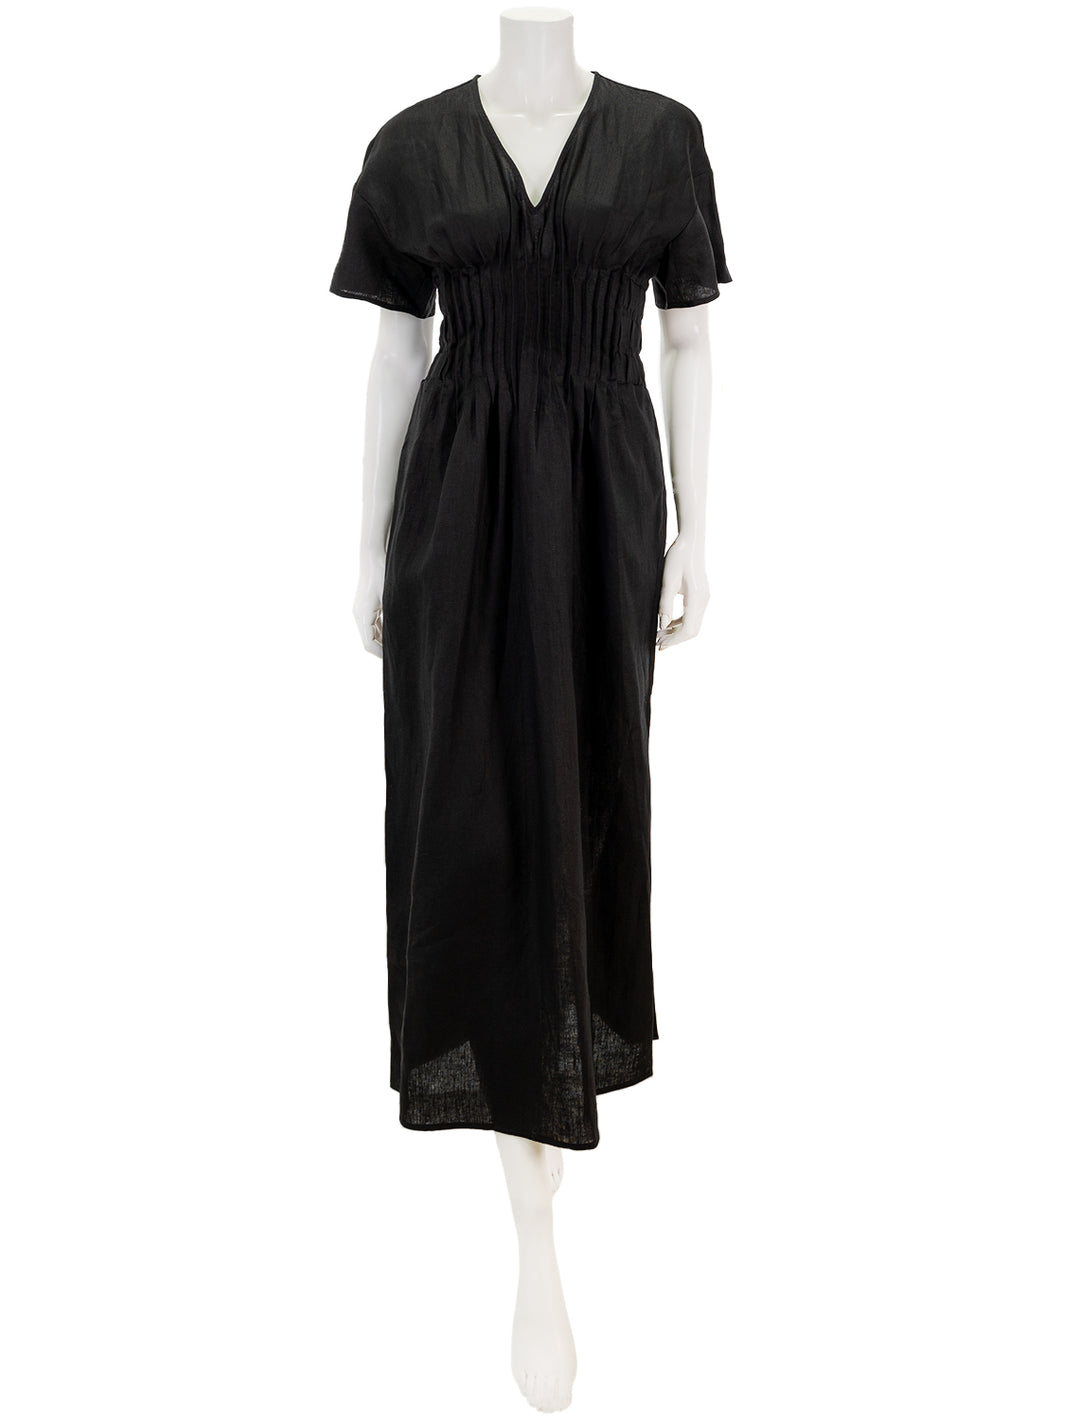 Front view of Staud's lauretta dress in black.